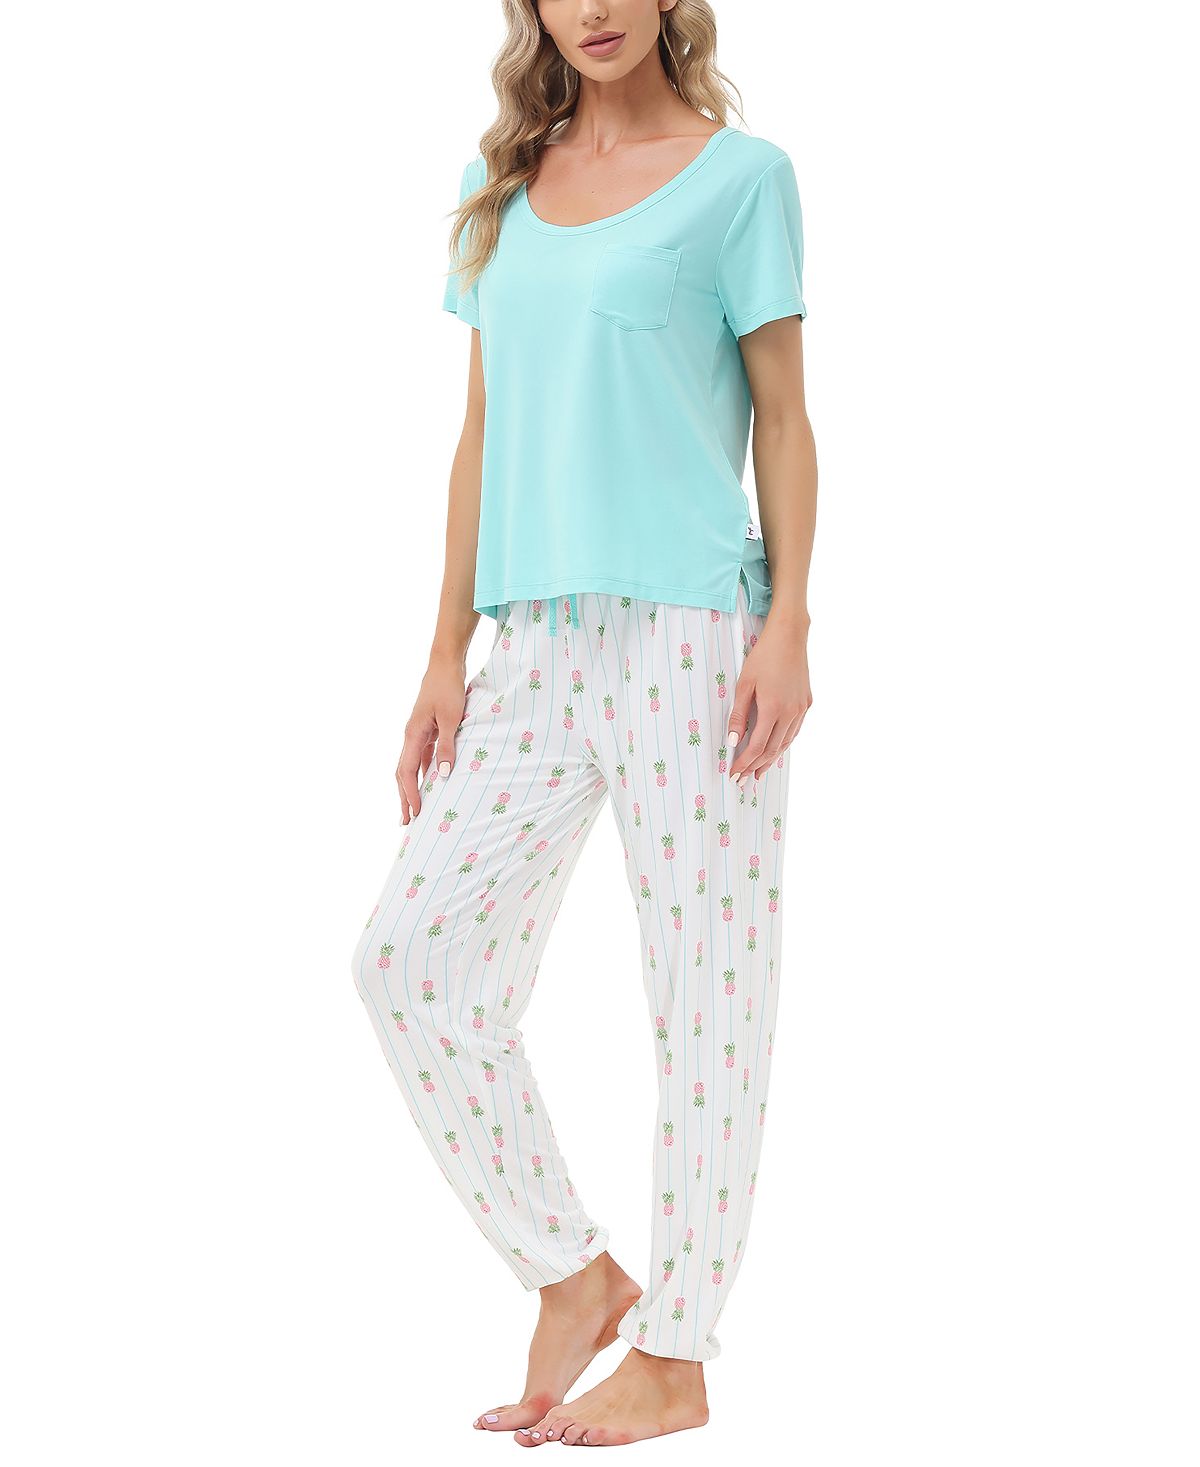 Женская футболка с короткими рукавами и карманами и брюки-джоггеры с принтом, пижамный комплект из 2 предметов Echo цена и фото